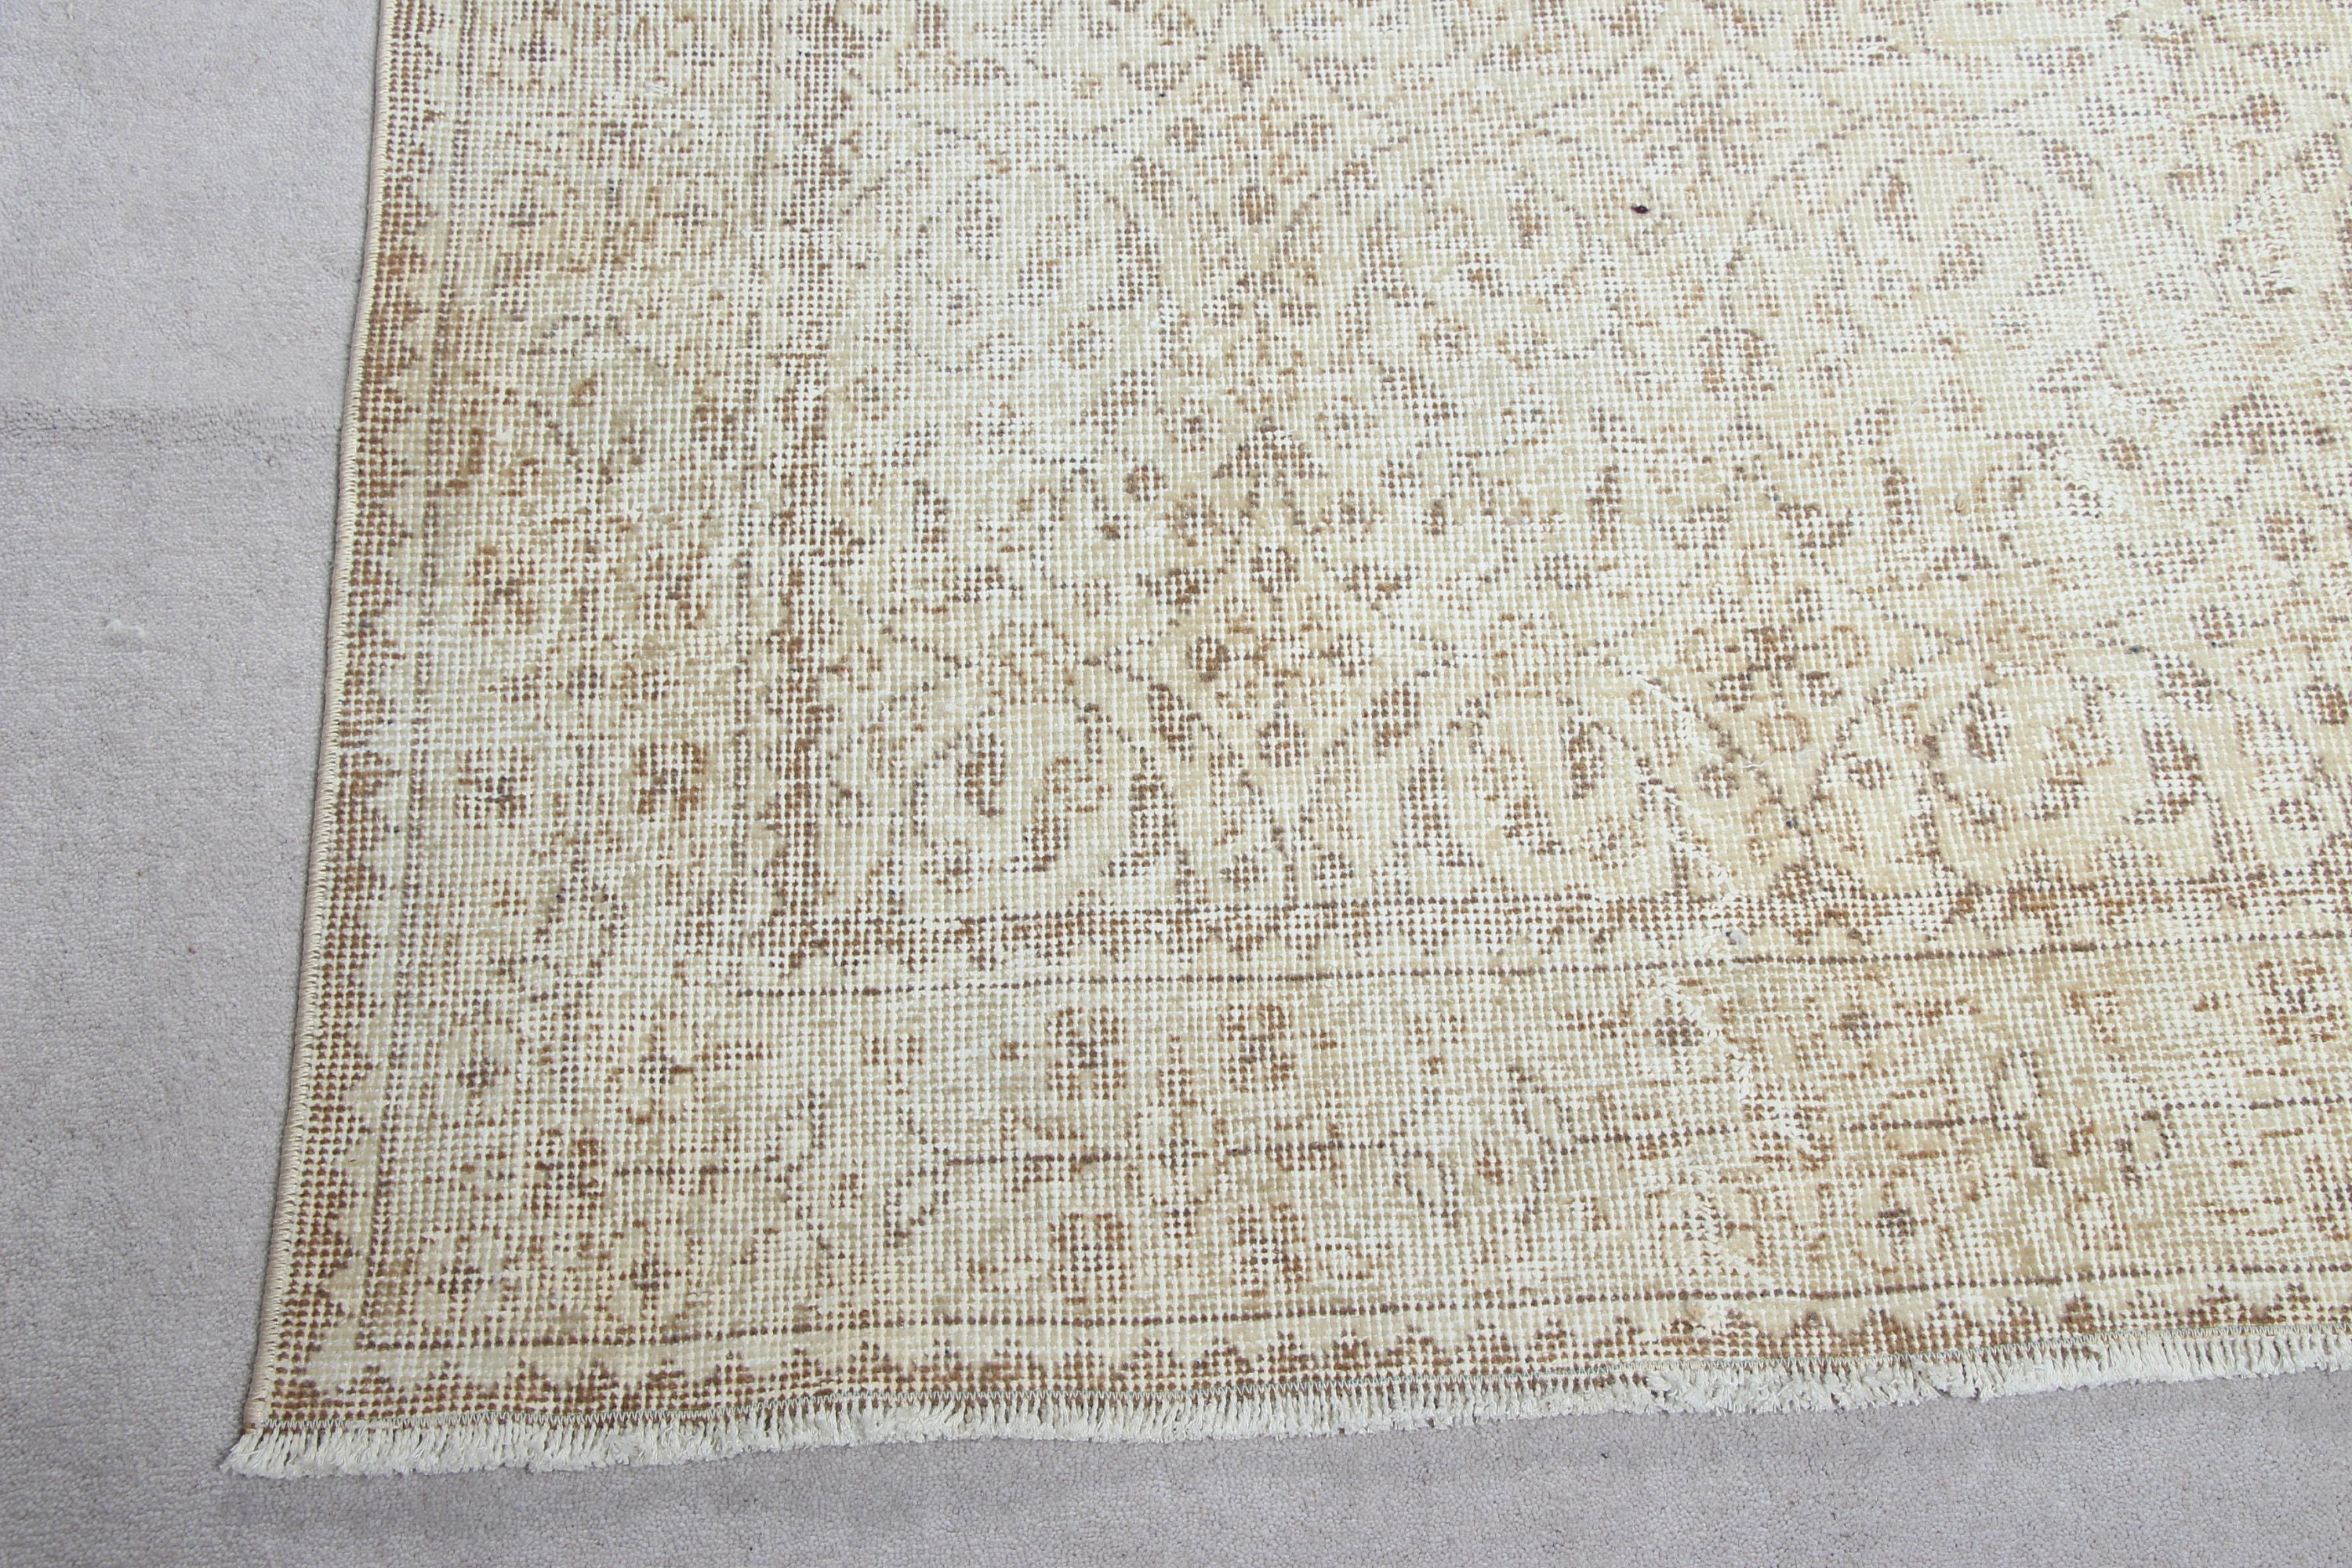 Beige Moroccan Rugs, Vintage Rug, Turkish Rugs, Anatolian Rugs, Living Room Rug, Aztec Rug, Bedroom Rug, 5.2x9.1 ft Large Rugs, Oushak Rugs